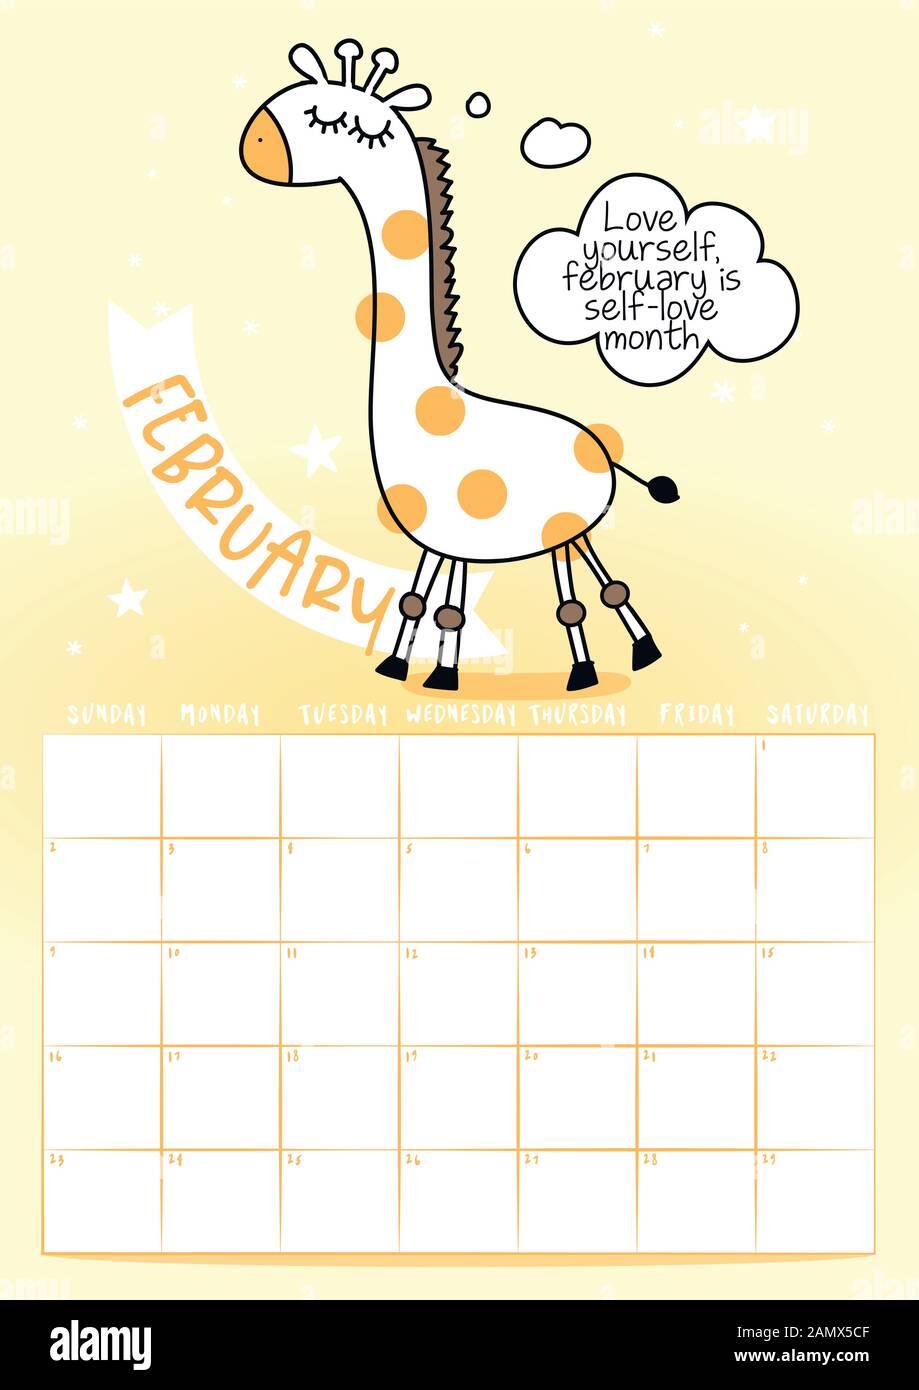 Februar 2020 Kalender mit Kalligraphie Phrase und Giraffe doodle: Ihre eigene Sonne. Kalender, Planer Design, Woche am Sonntag beginnt, sta Stock Vektor